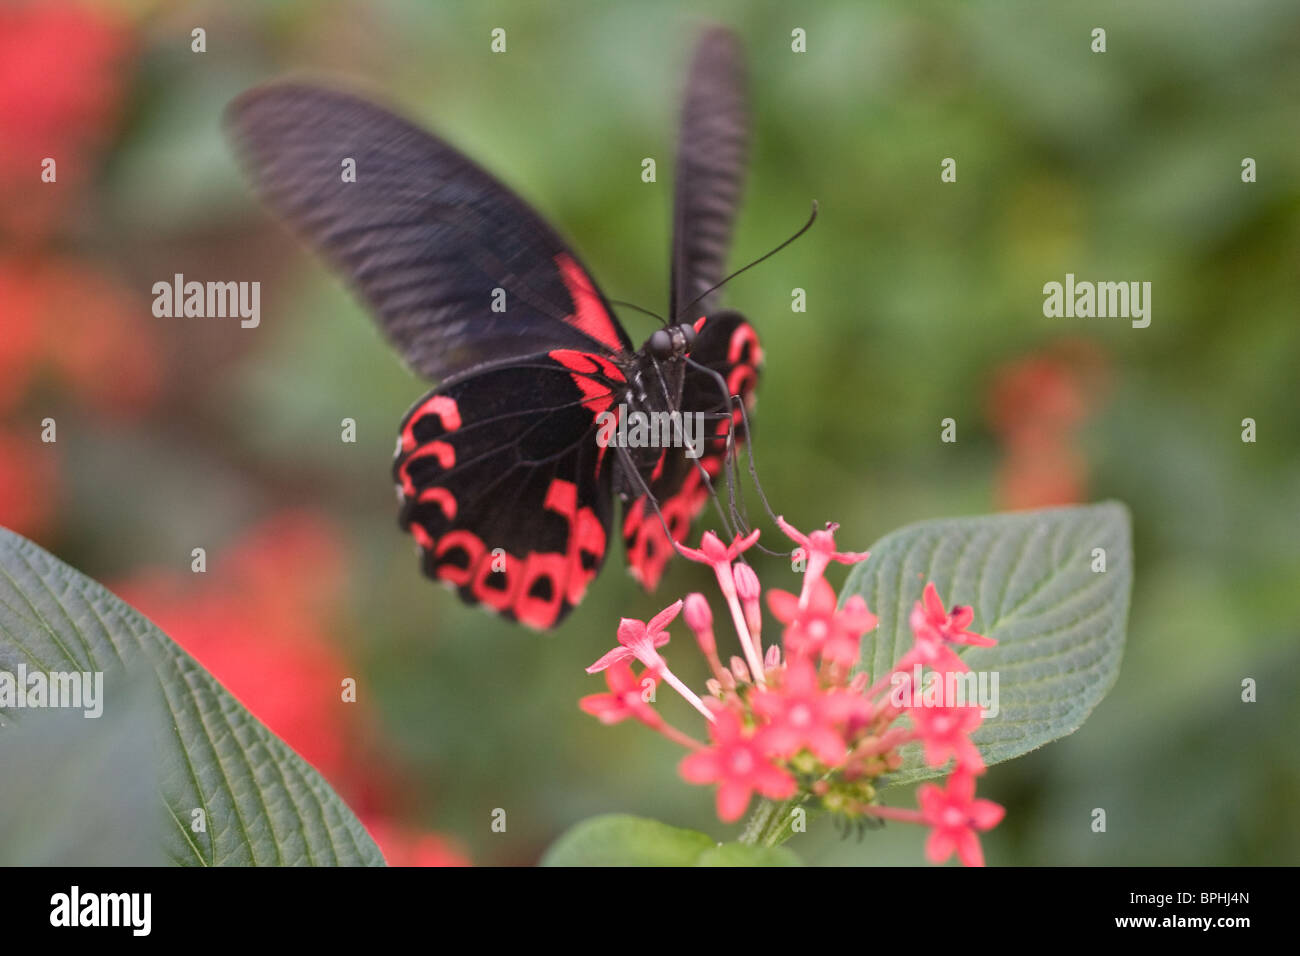 Mariposa sobrevolando una flor. Foto de stock